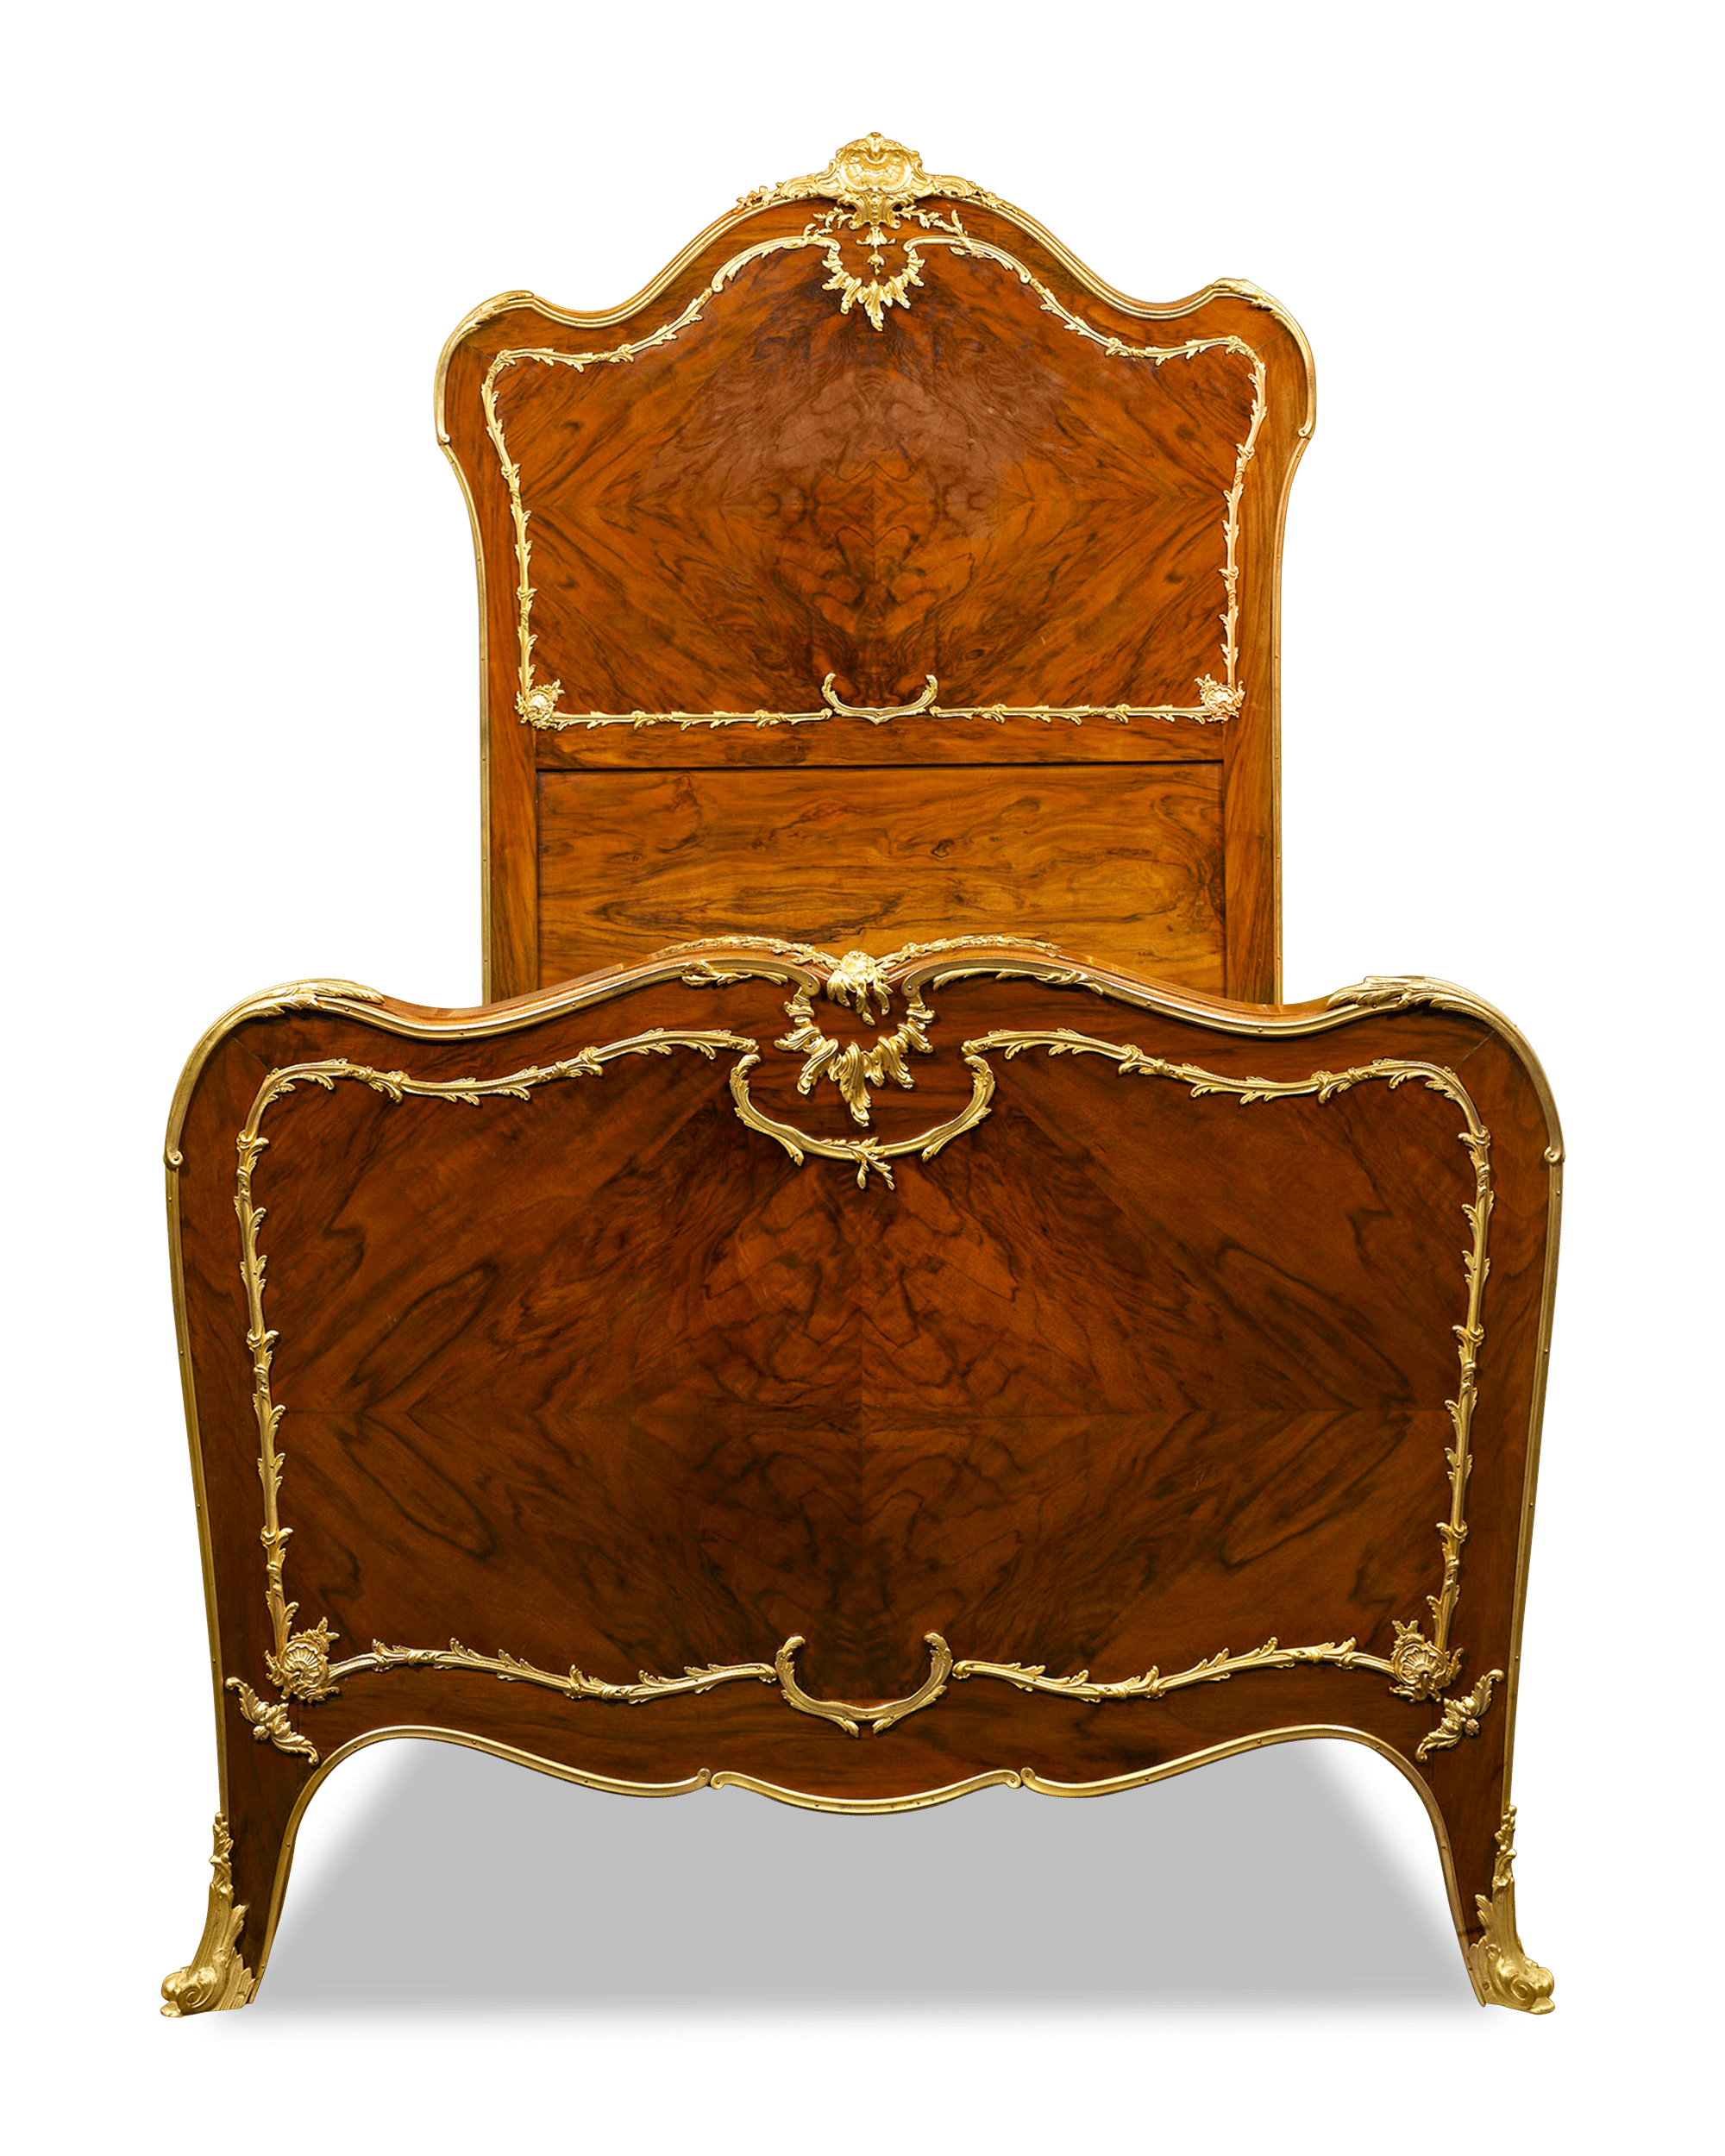 The mahogany displays an elegant grain and rich patina